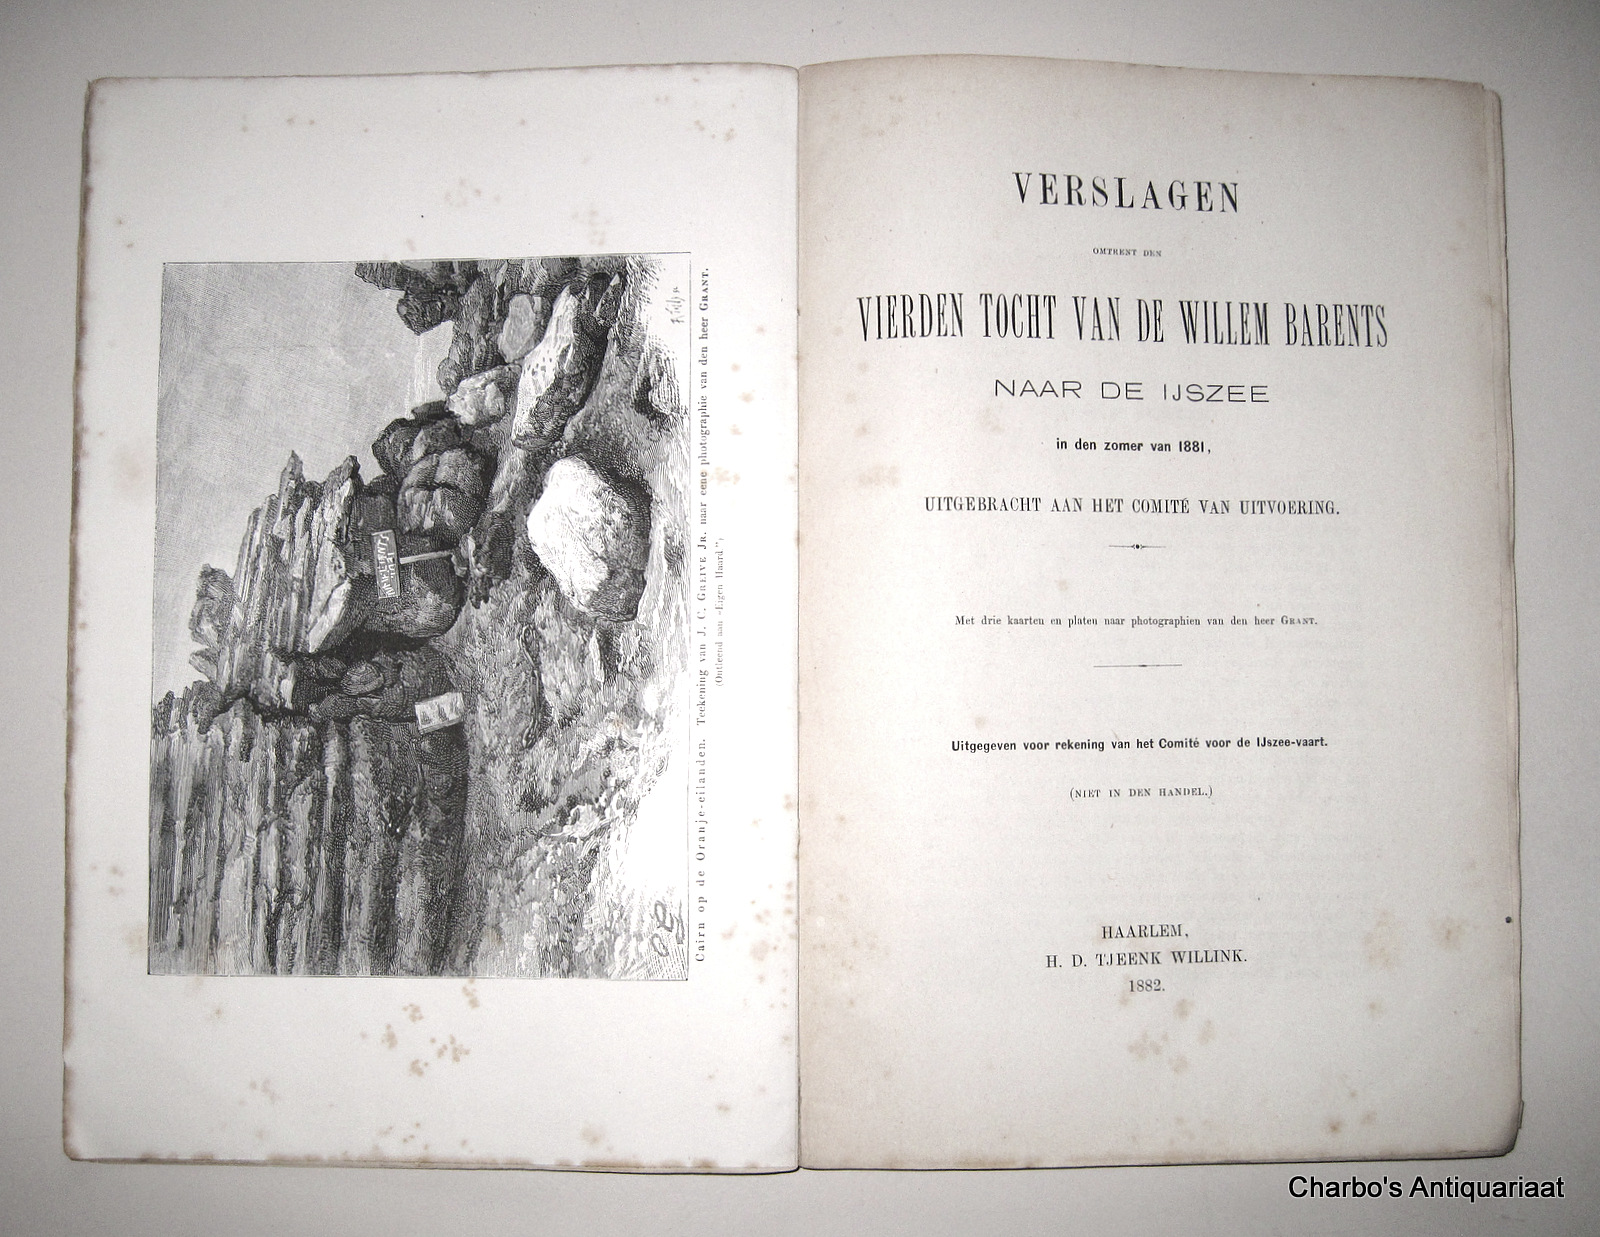 WILLEM BARENTS, -  Verslagen omtrent den vierden tocht van de Willem Barents naar de IJszee in den zomer van 1881, uitgebracht aan het Comite van Uitvoering.